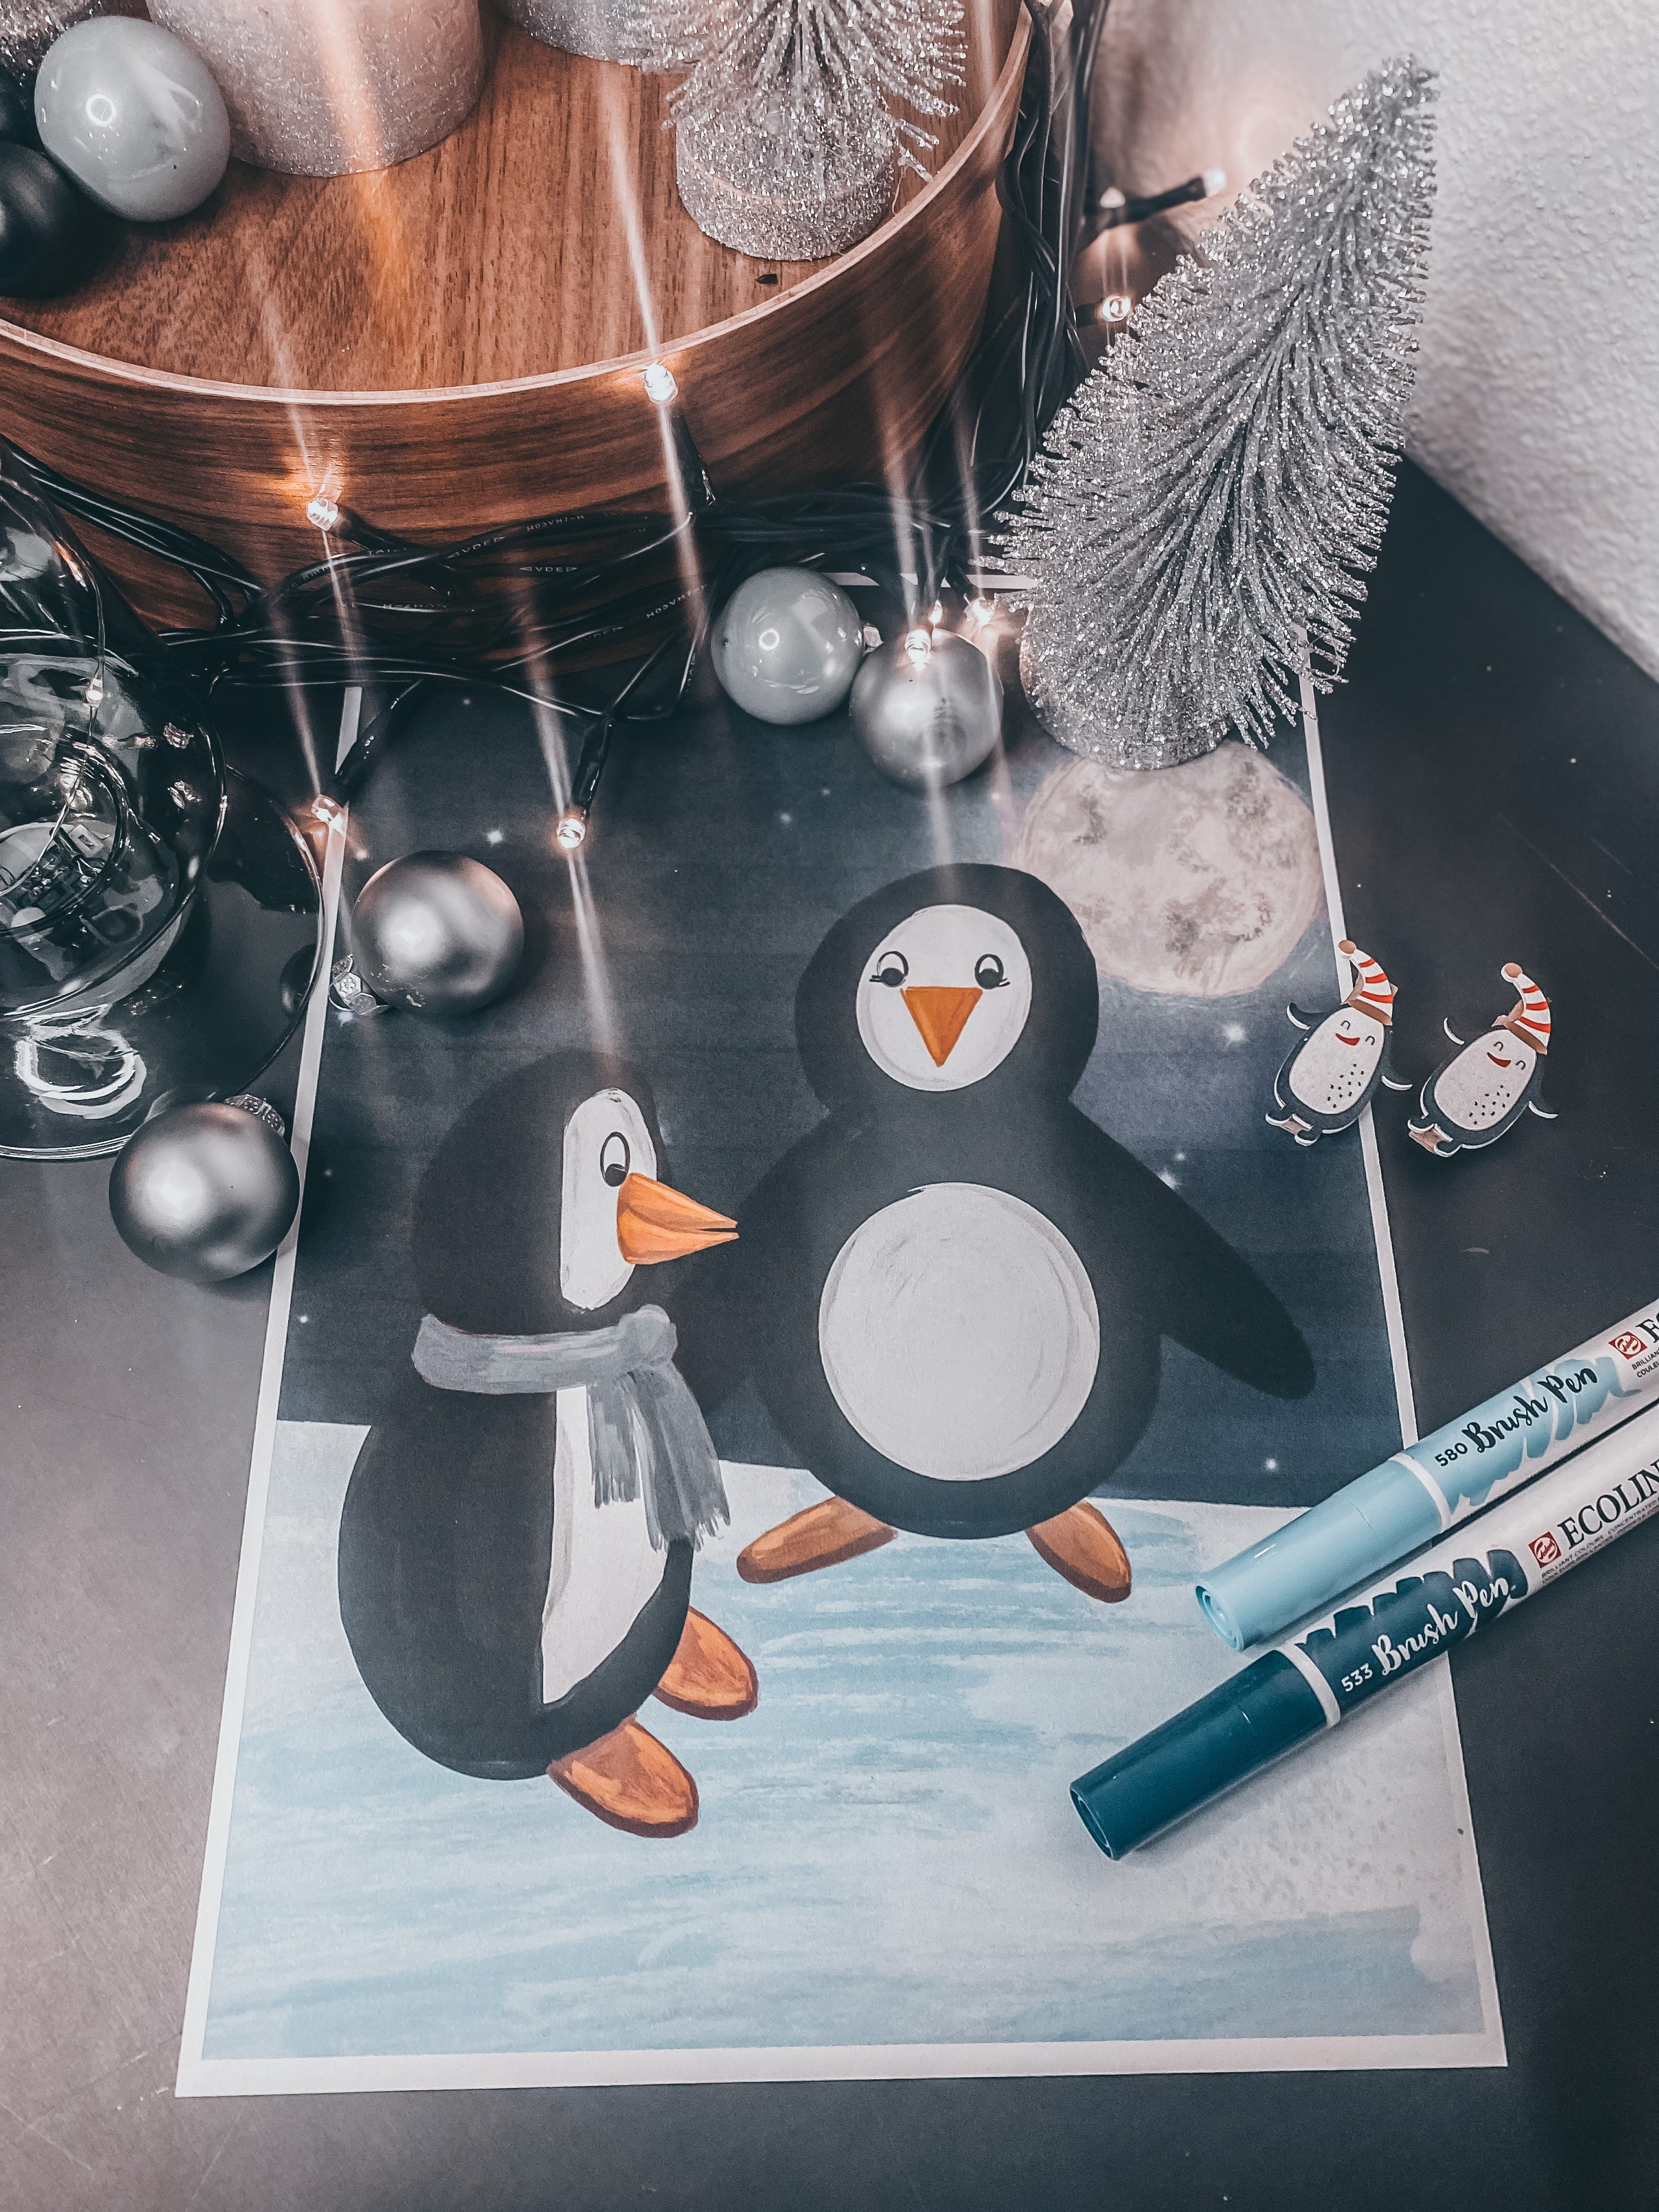 Pingutastisches Adventspaket - Eine weihnachtliche Reise vom Süd- zum Nordpol